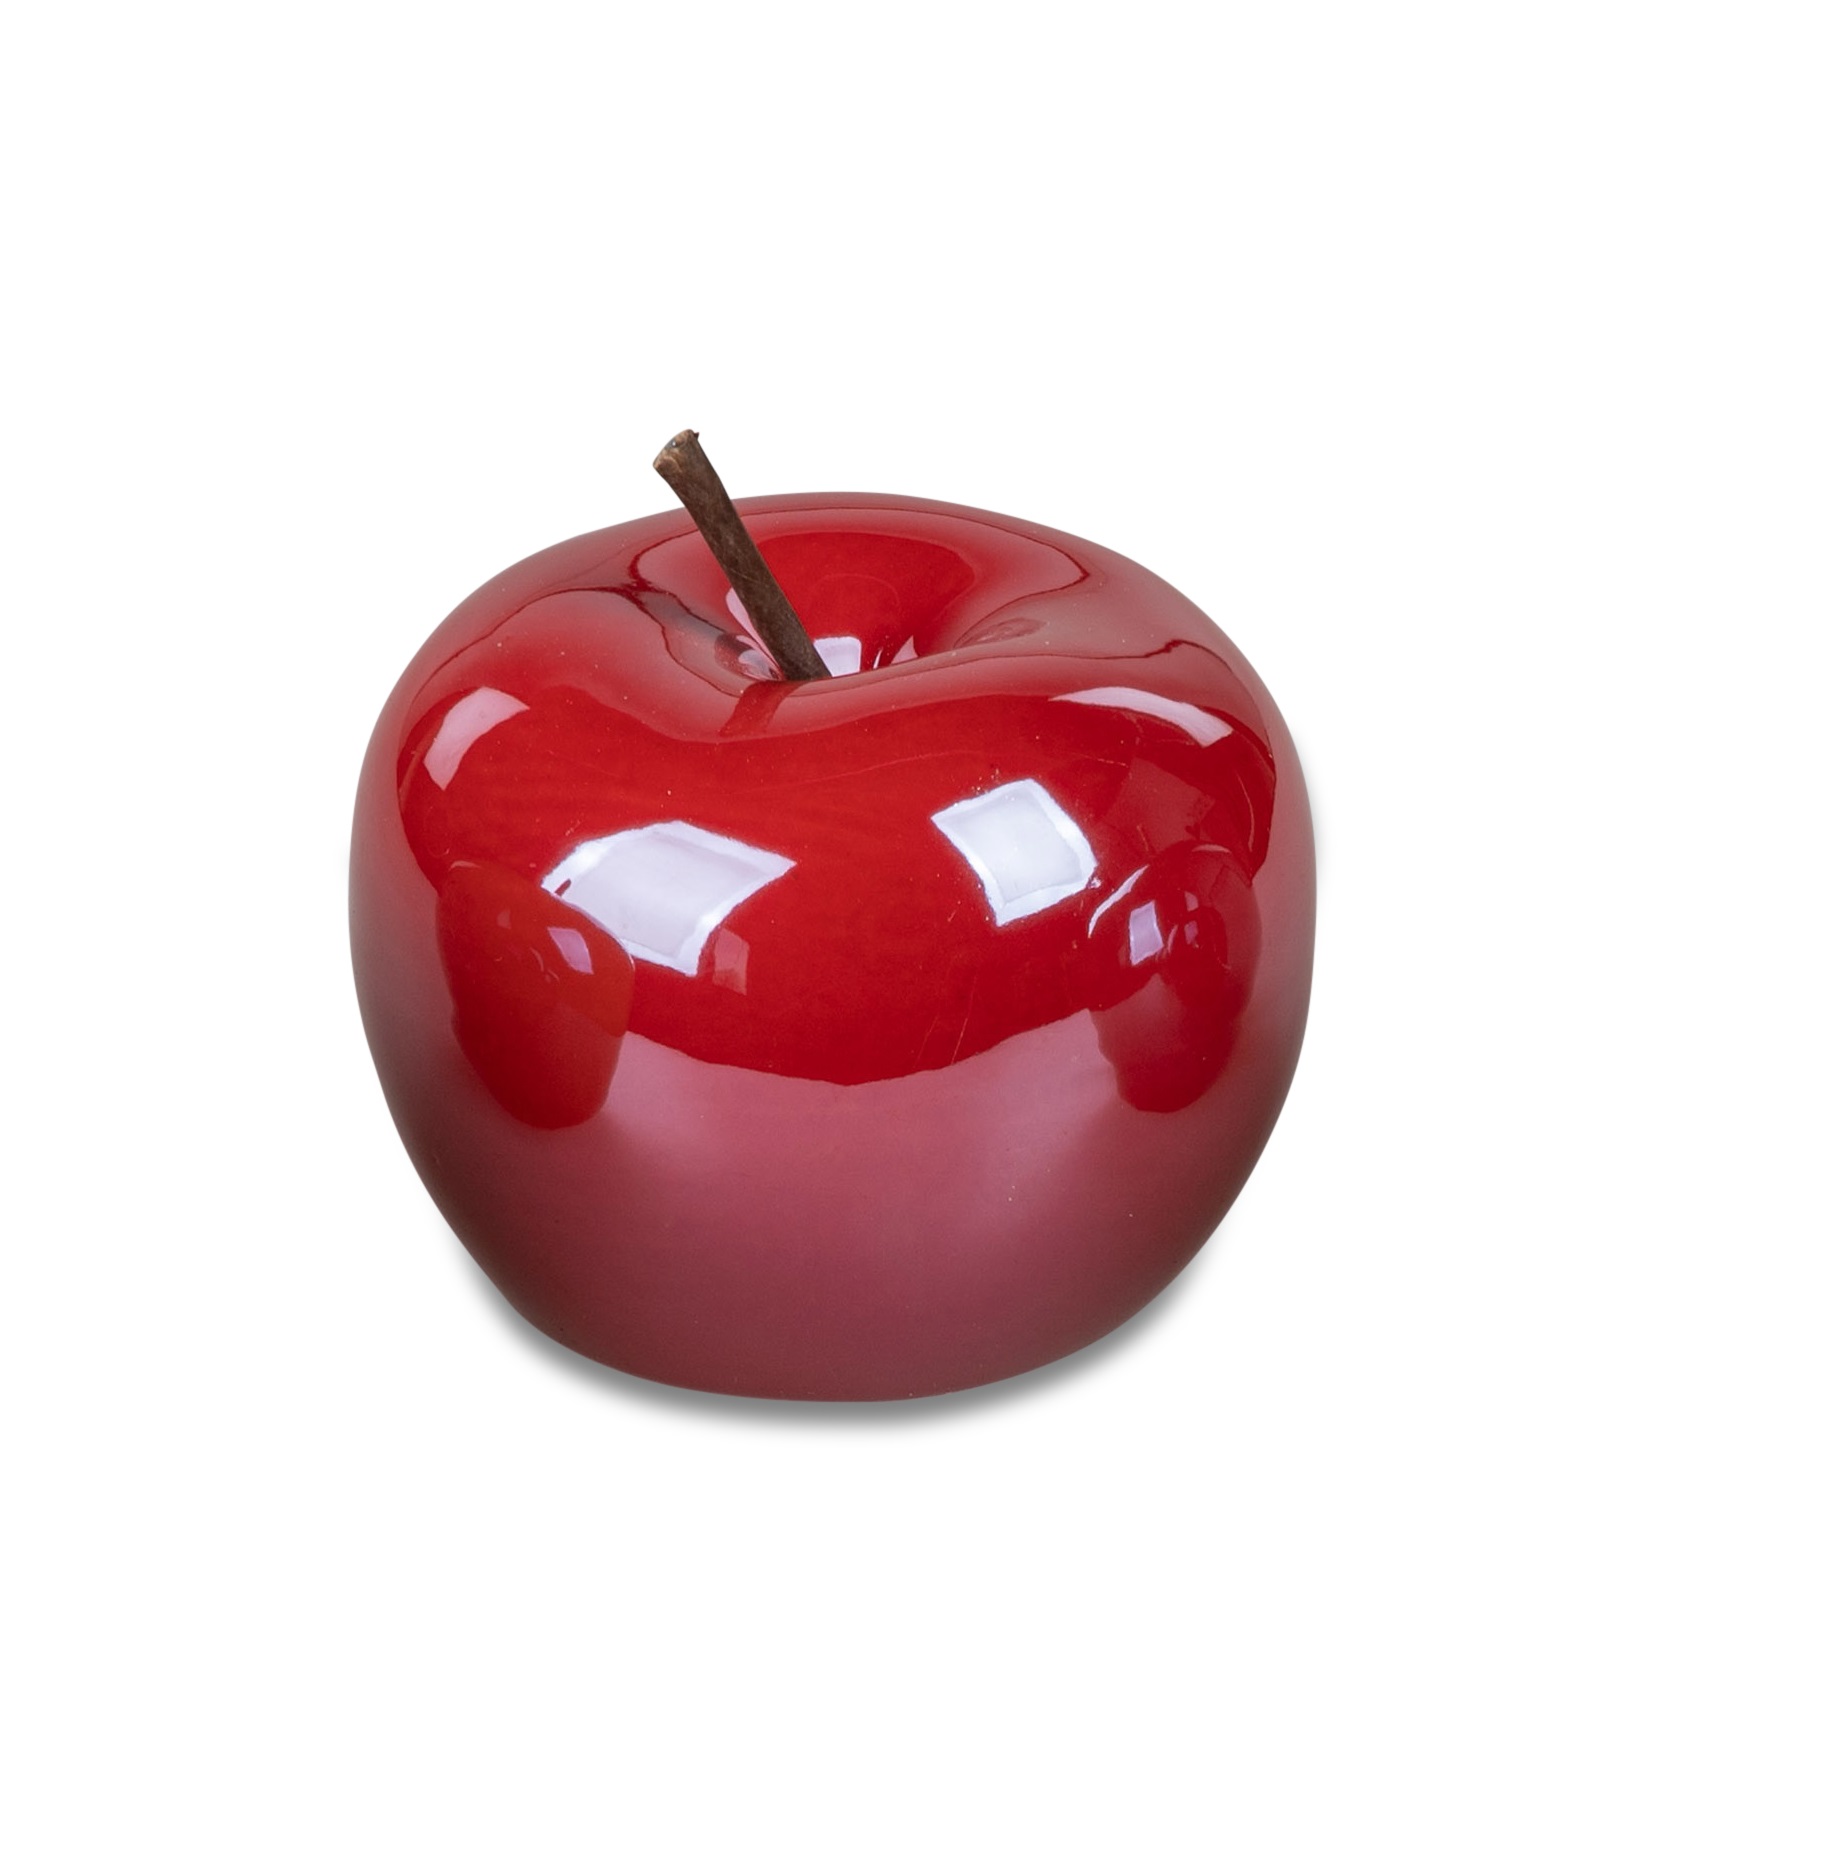 Deko-Objekt Apfel 8 cm Lüster Trend rot Deko Apfel Tischdekor Formano